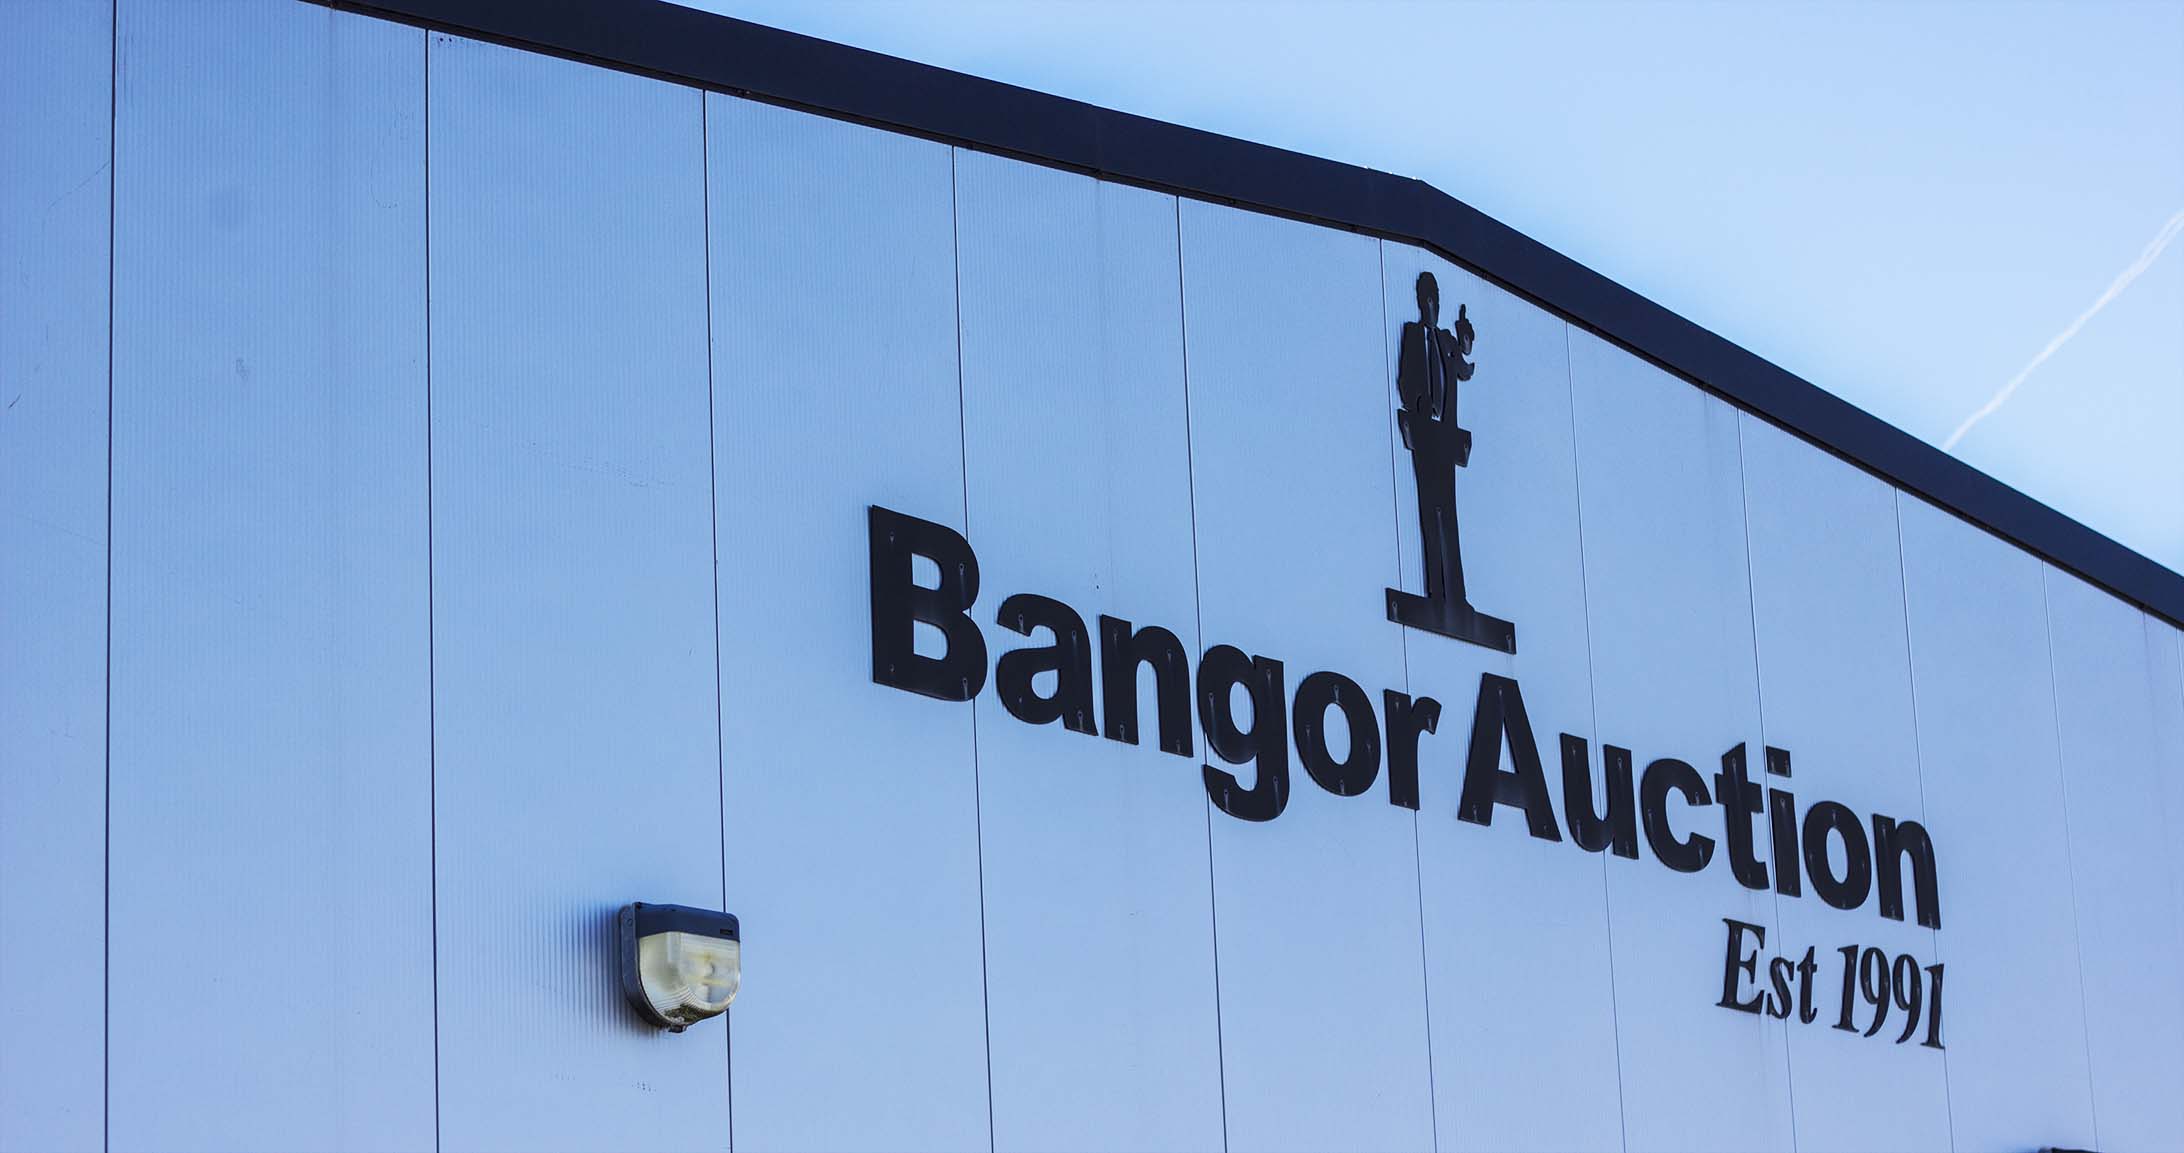 Bangor Auctions Services